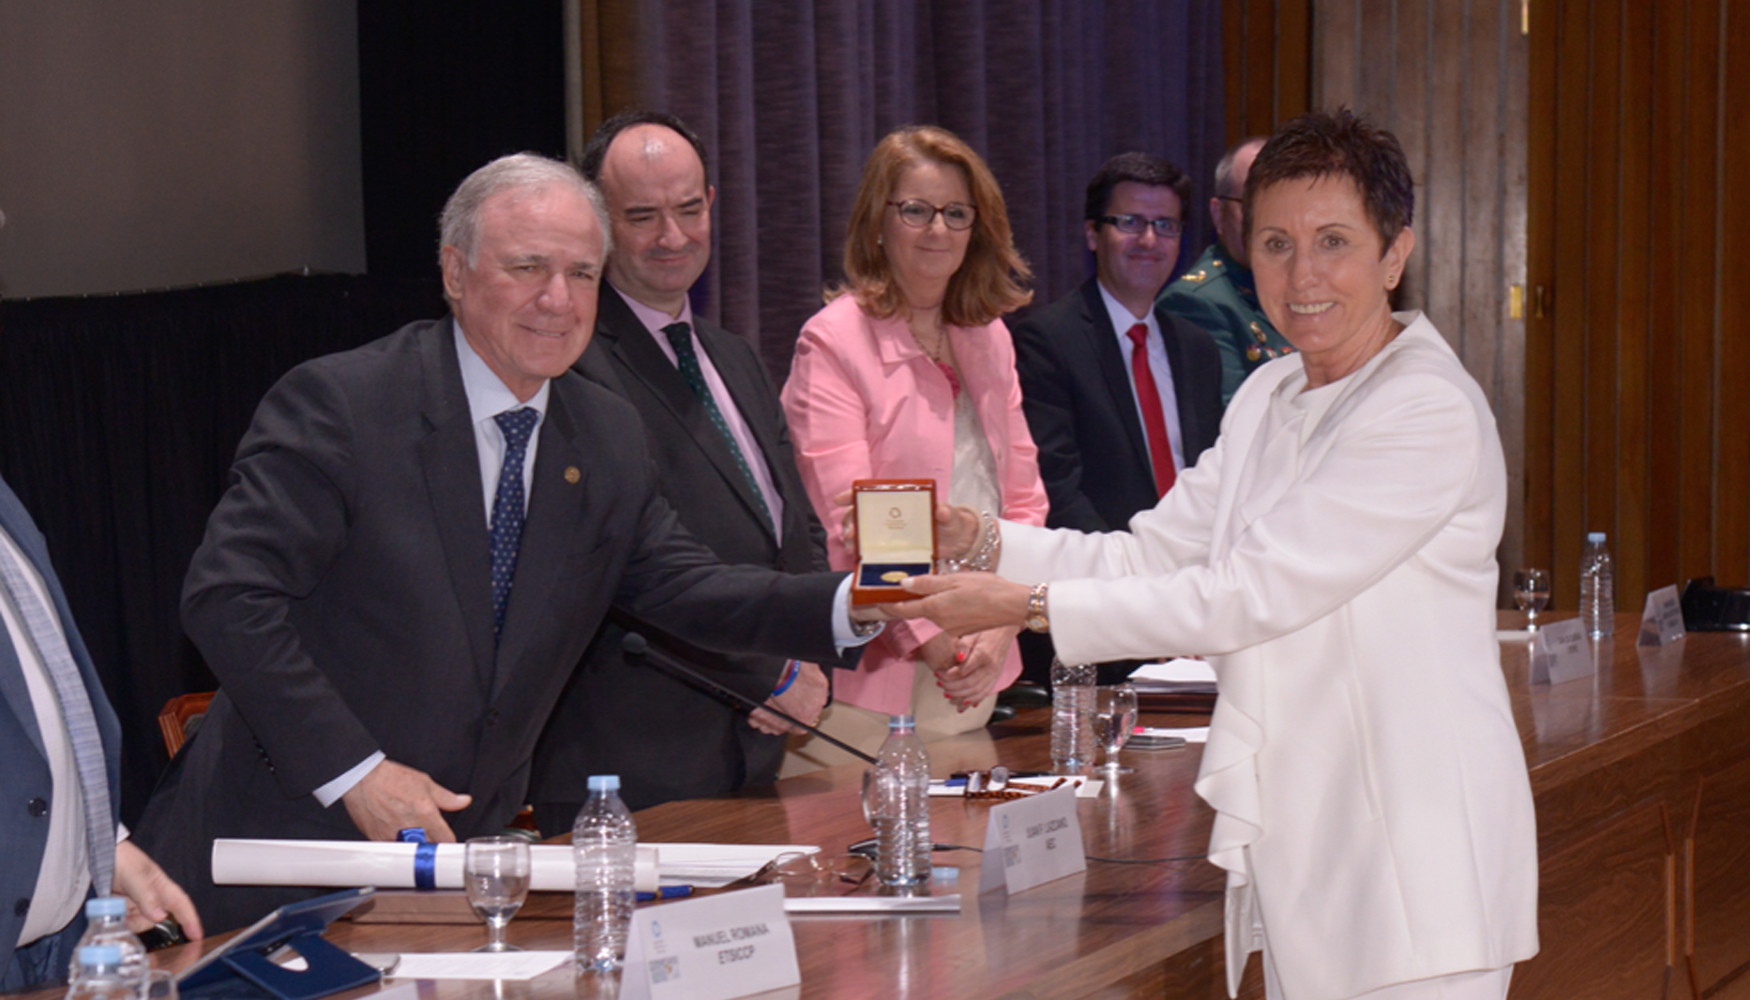 Blanca Parra, directora gerente del Hospital Nacional de Parapljicos de Toledo, recoge la Medalla de Oro de la Carretera...